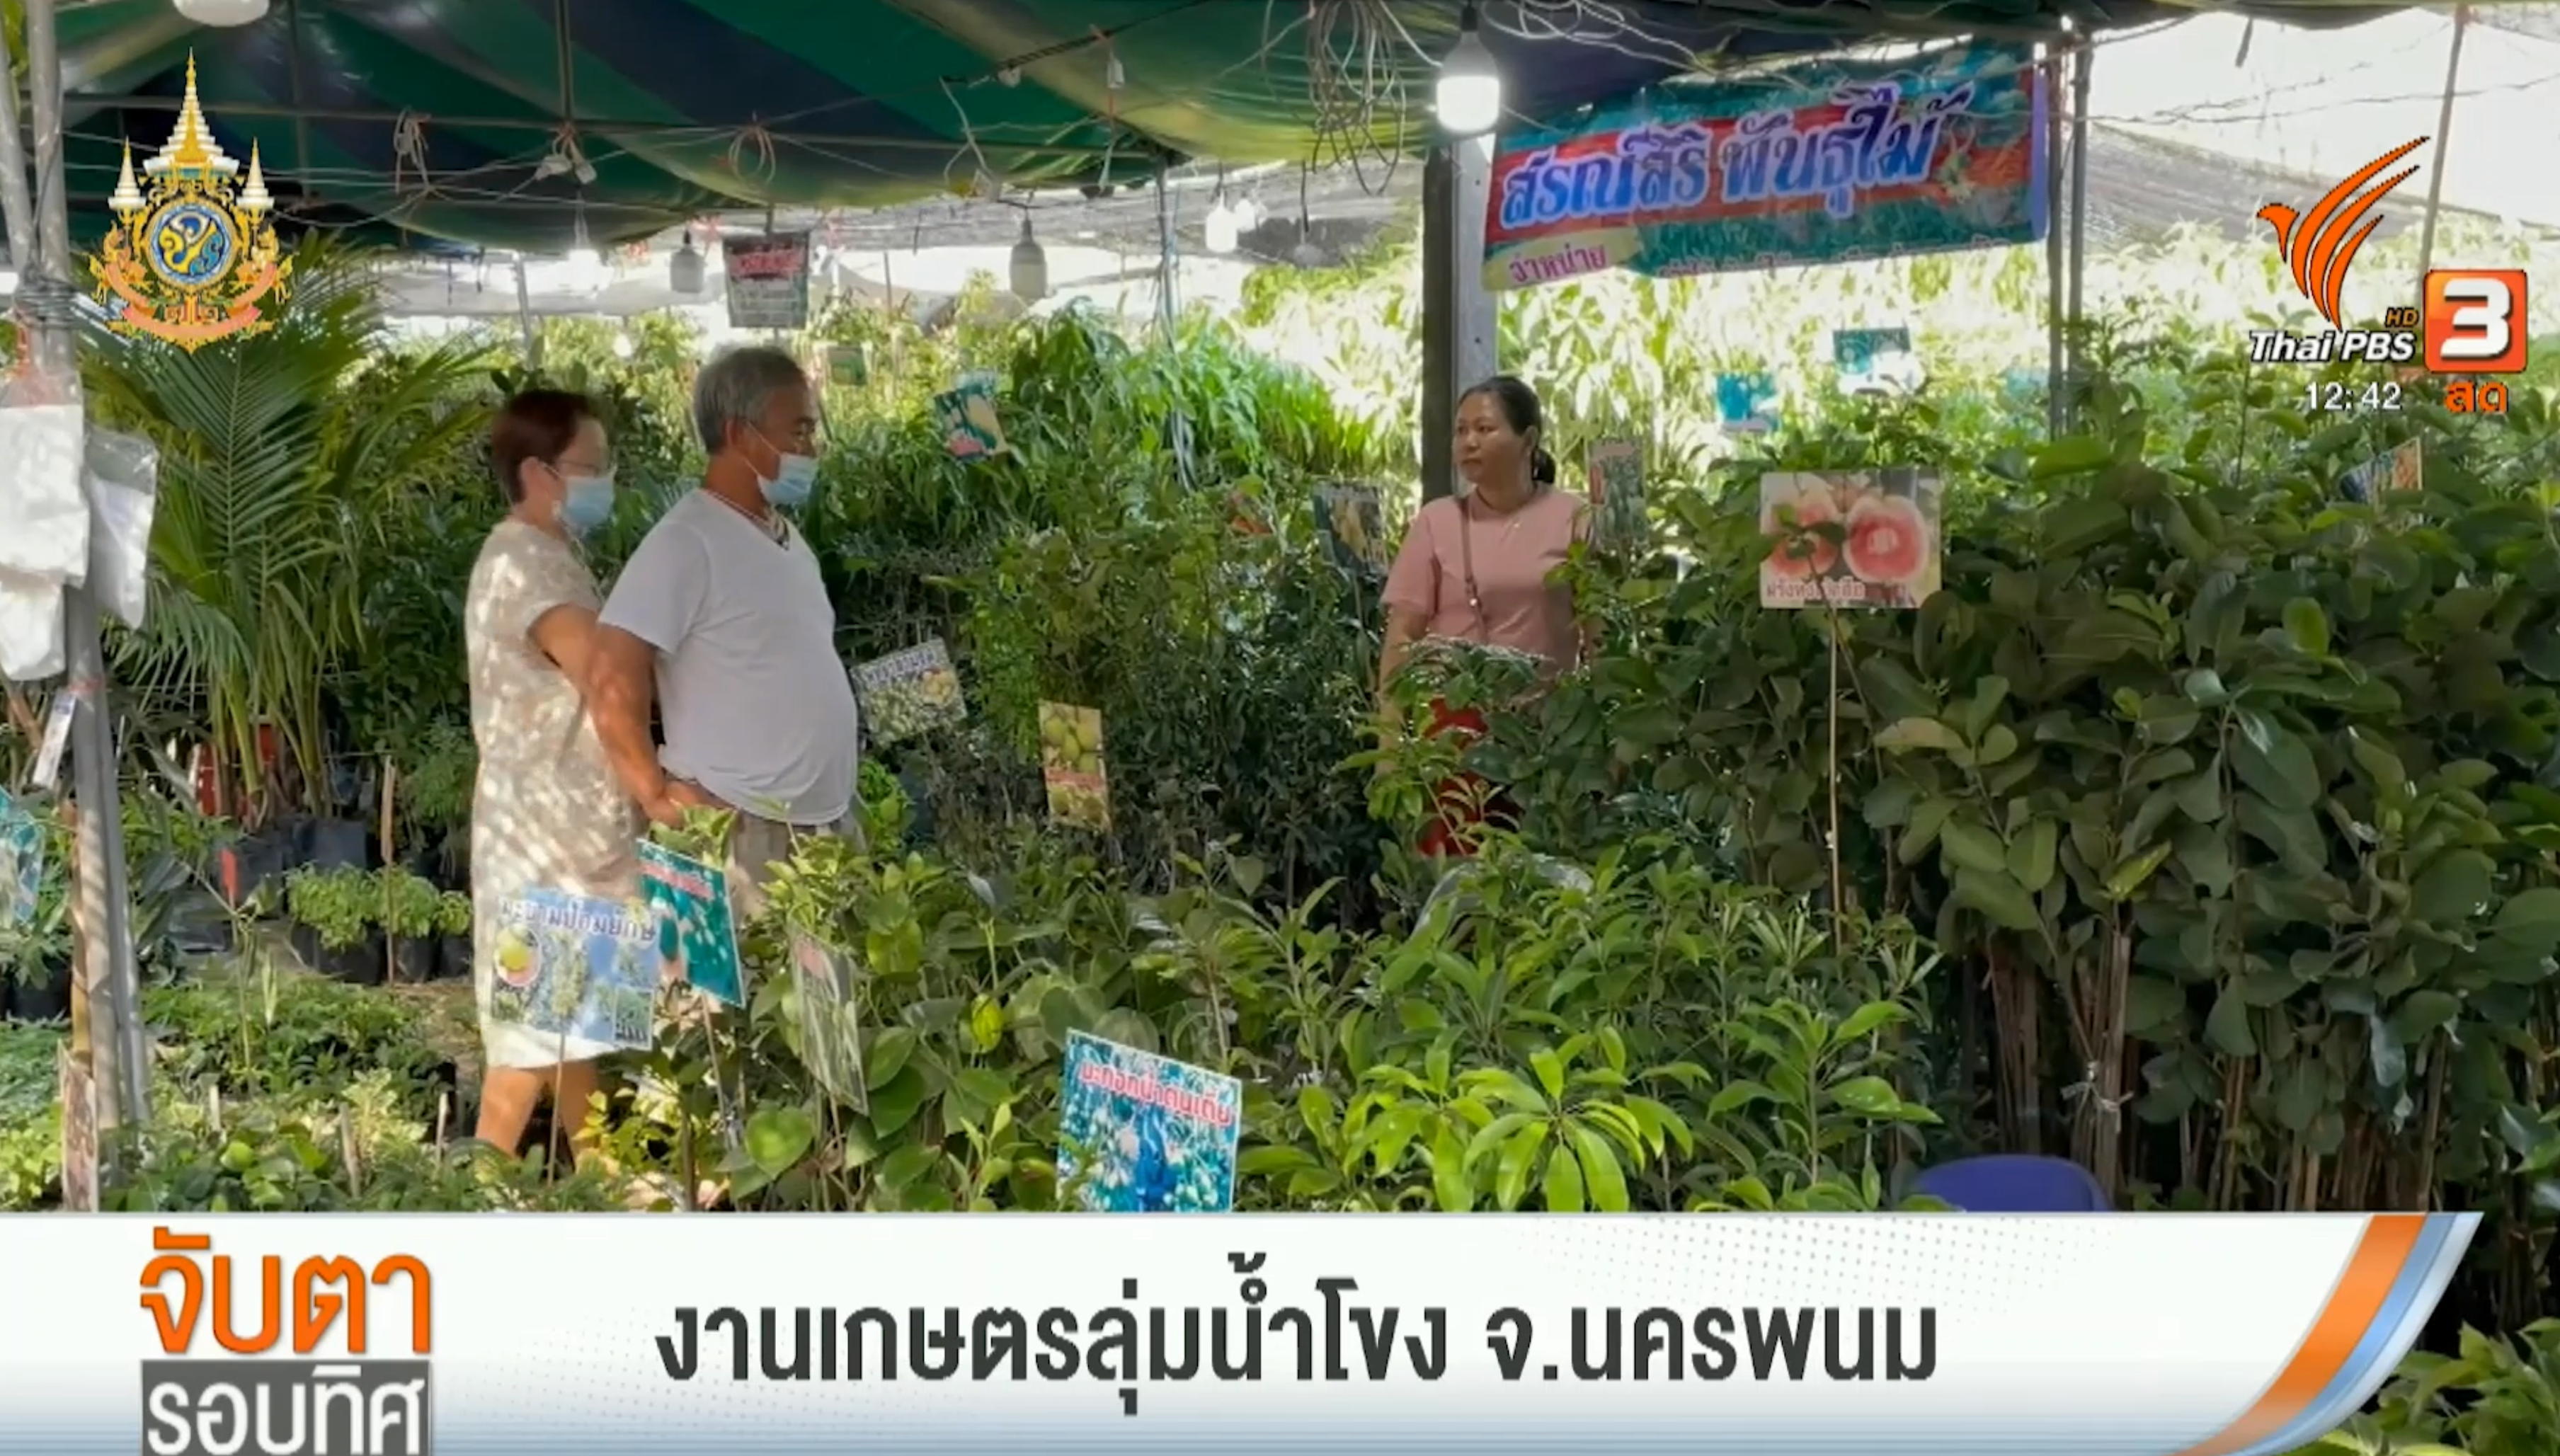 Thai PBS - ม.นครพนม จัดงานเกษตรลุ่มน้ำโขง ครั้งที่ 25